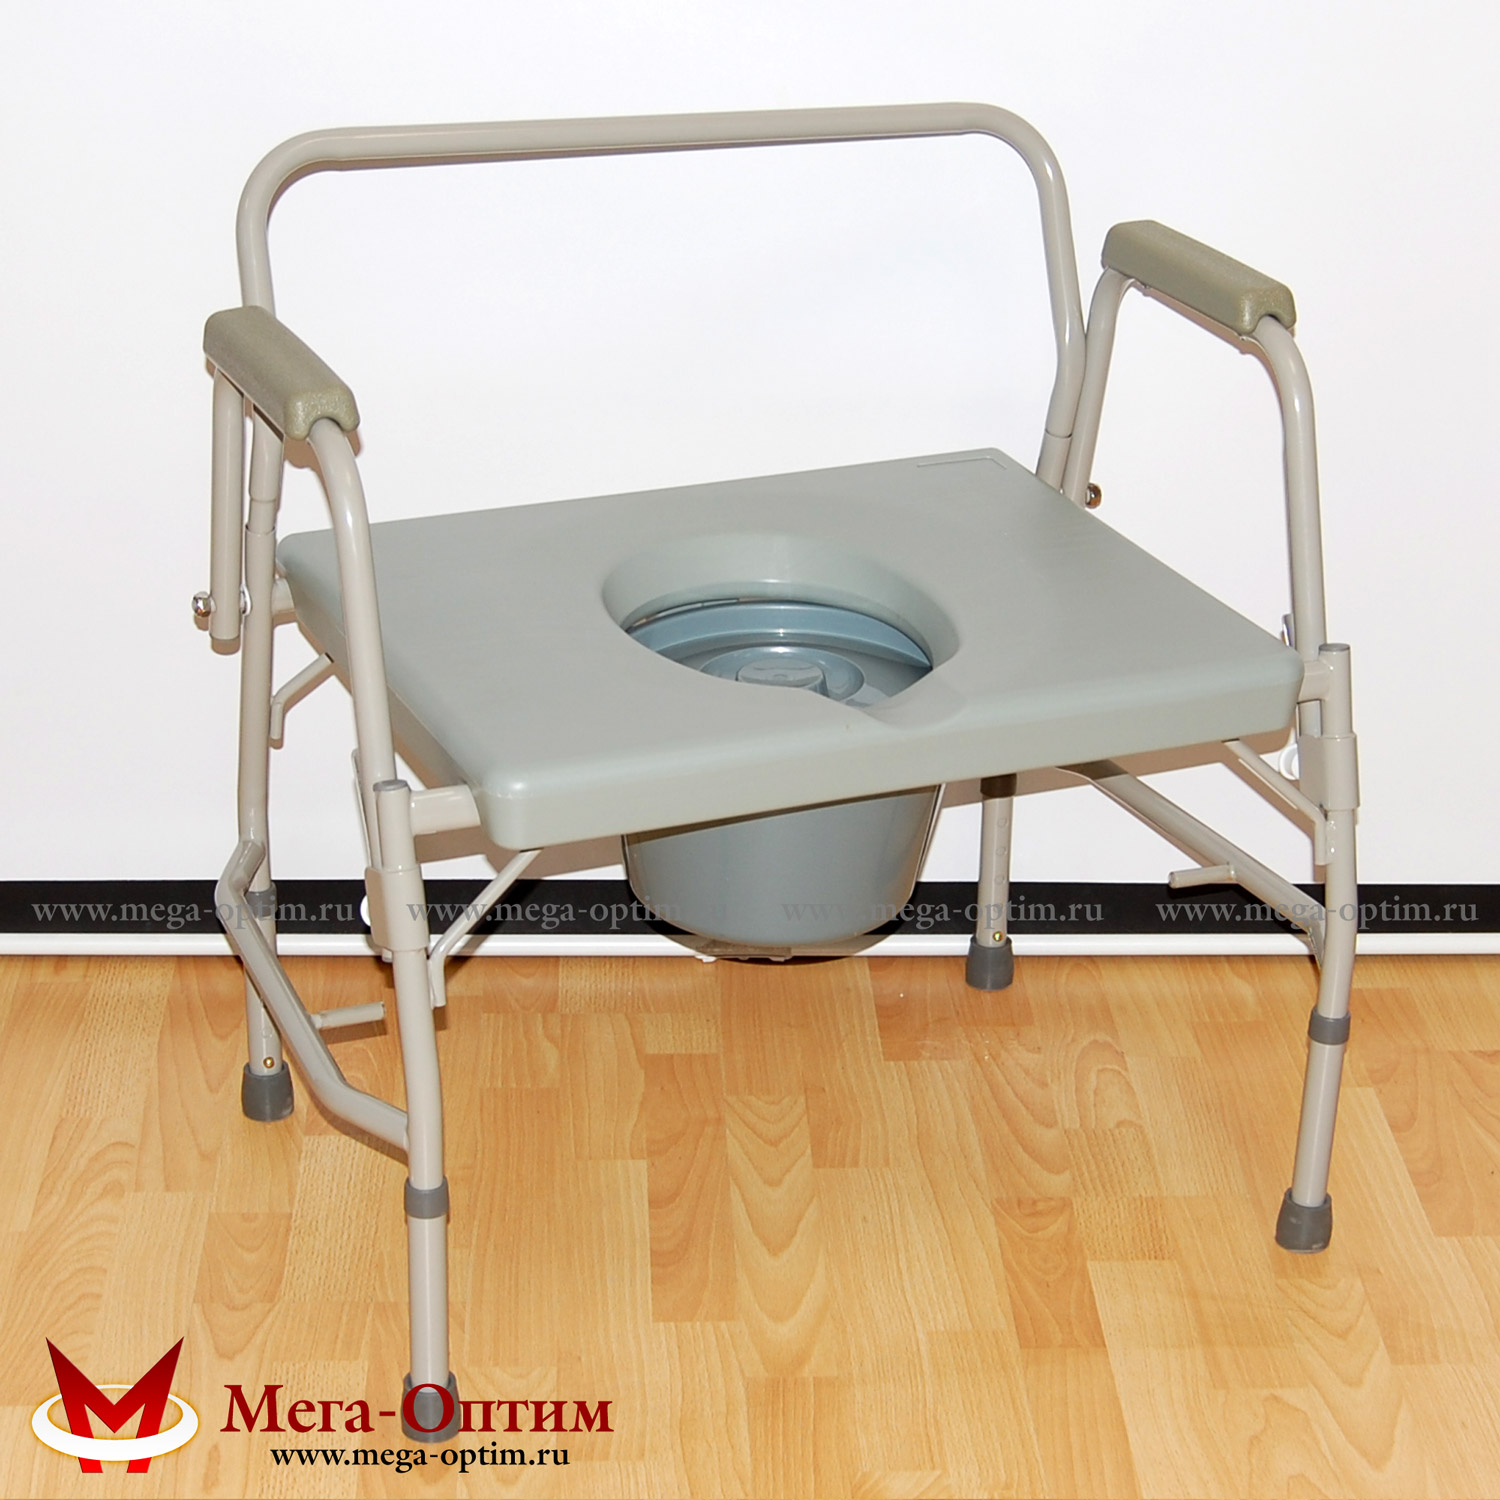 Кресло-стул с санитарным оснащением HMP 7012 МЕГА-ОПТИМ 